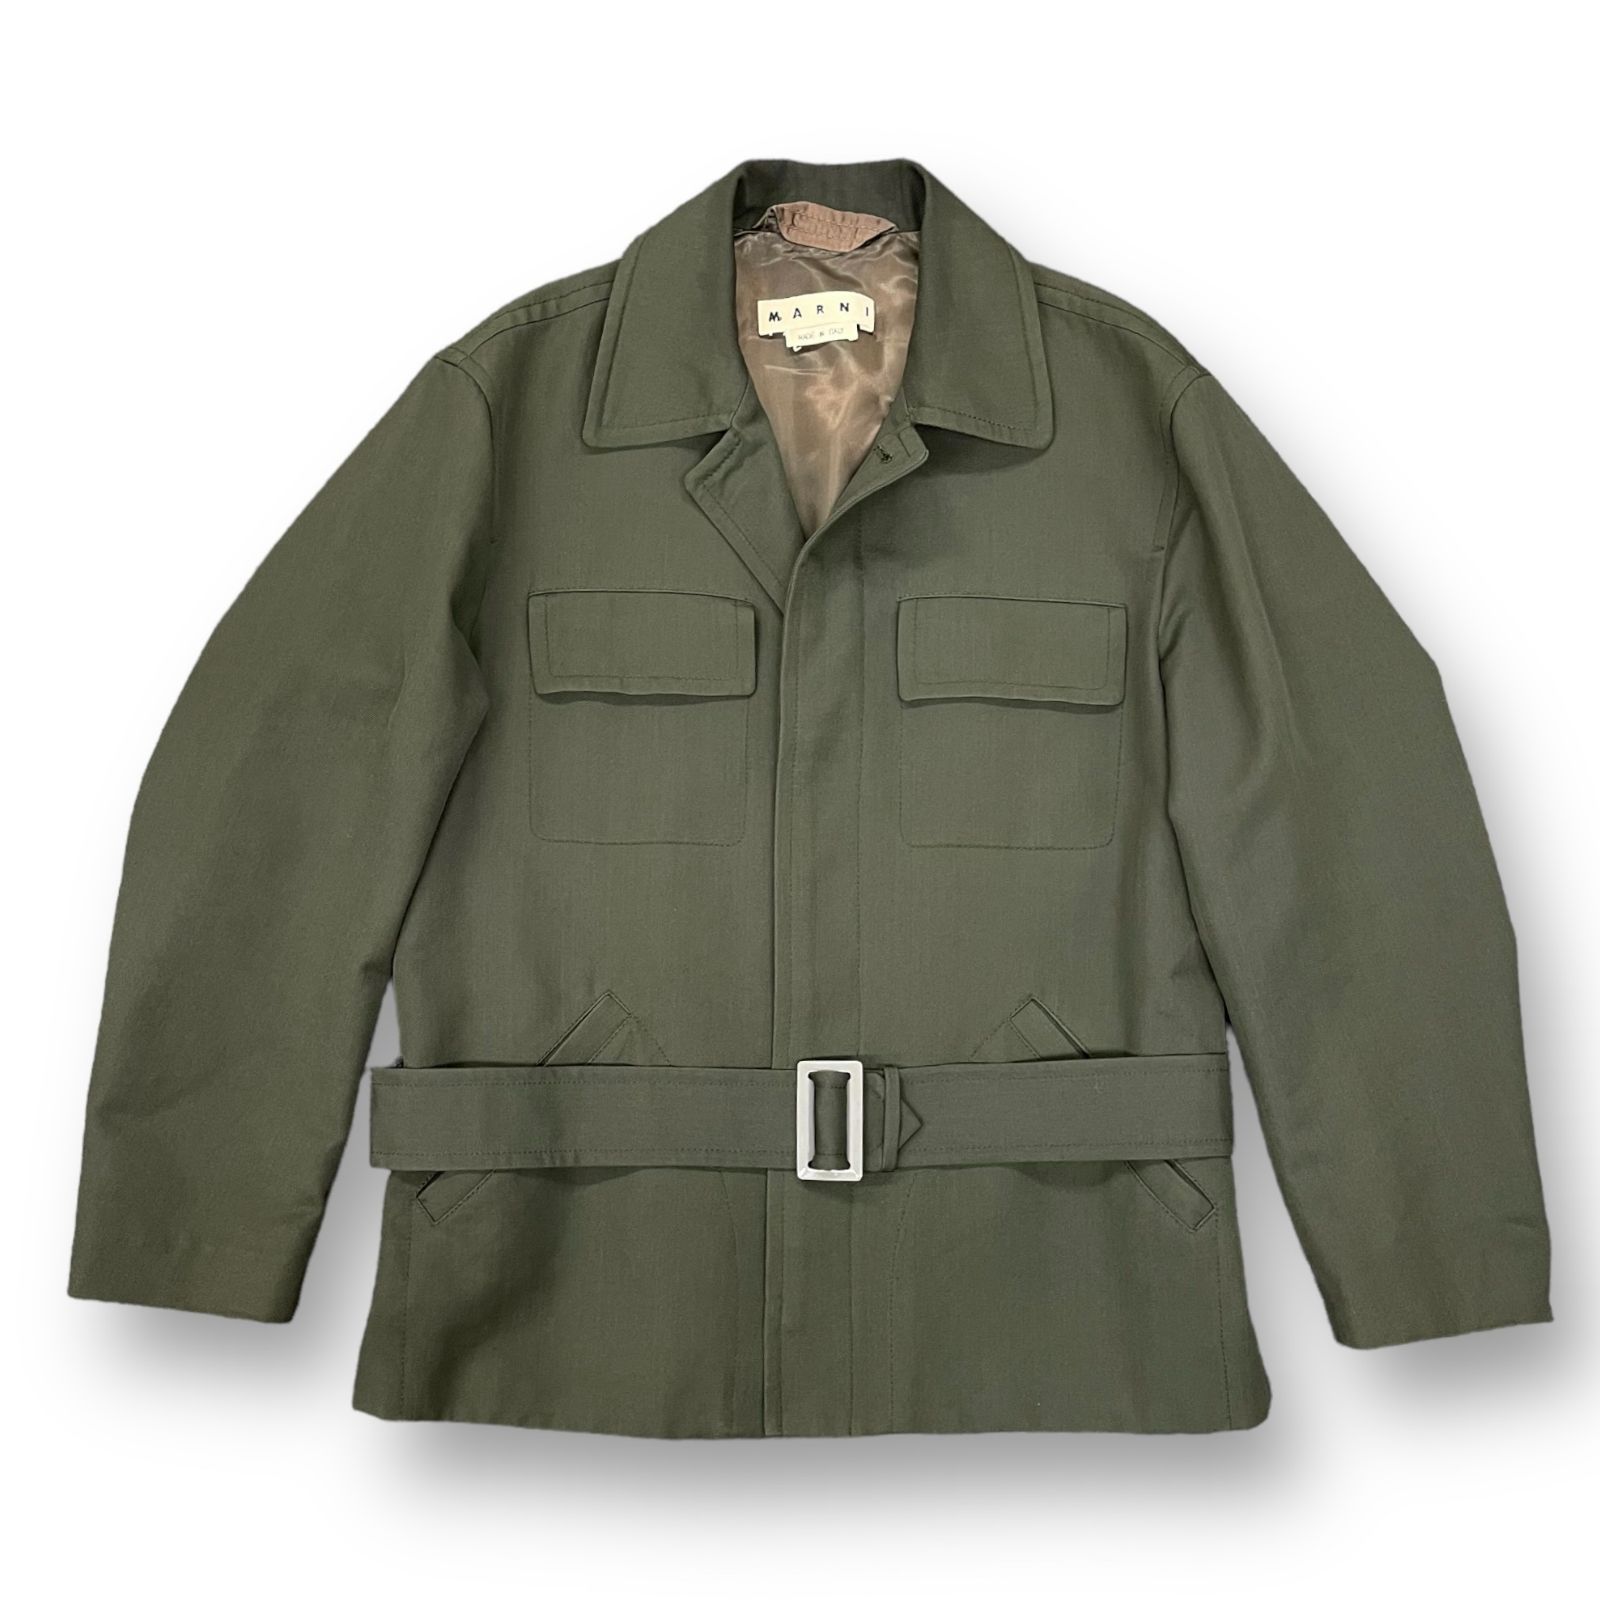 ジップボタンボタン留めMARNI archives military buckle jacket ...